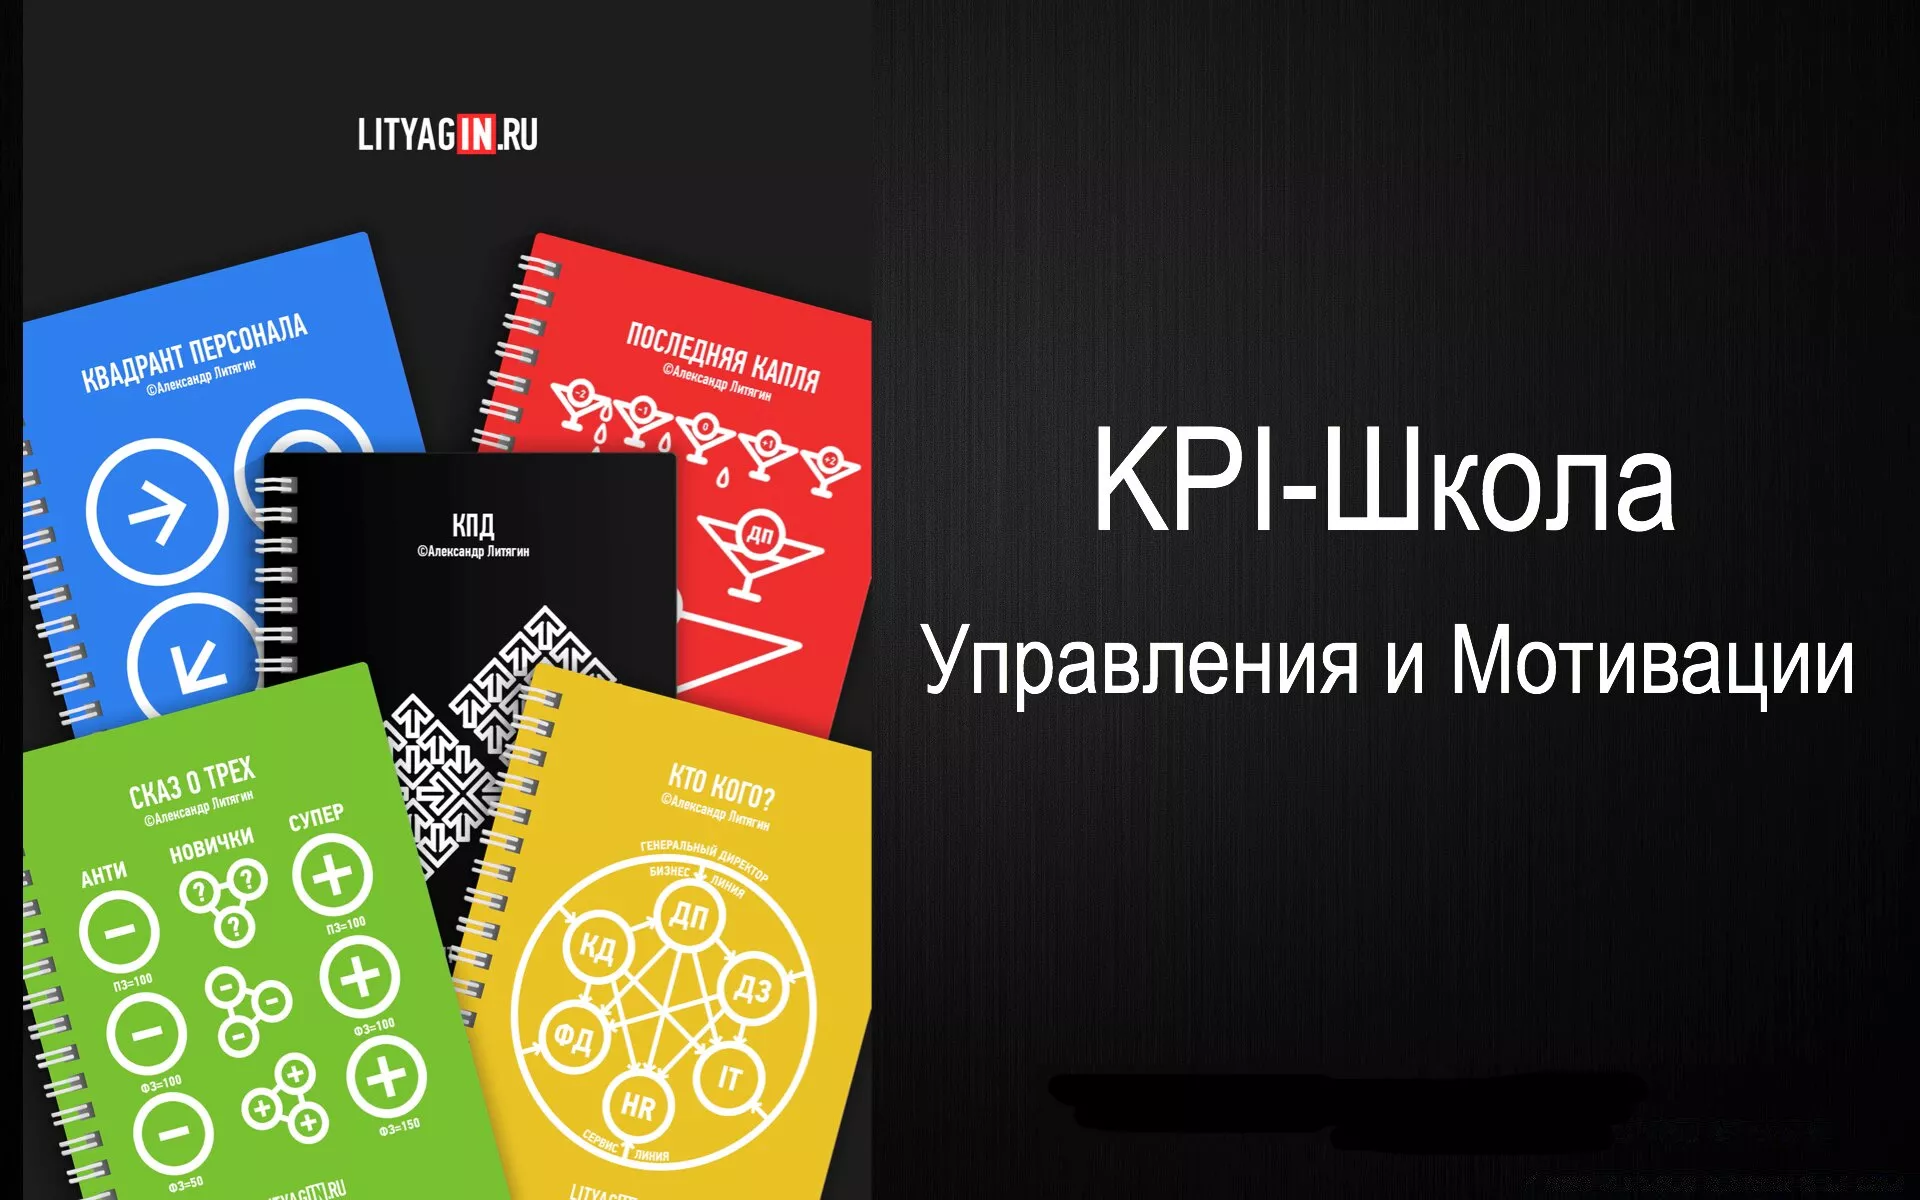 KPI-школа мотивации и управления Александра Литягина